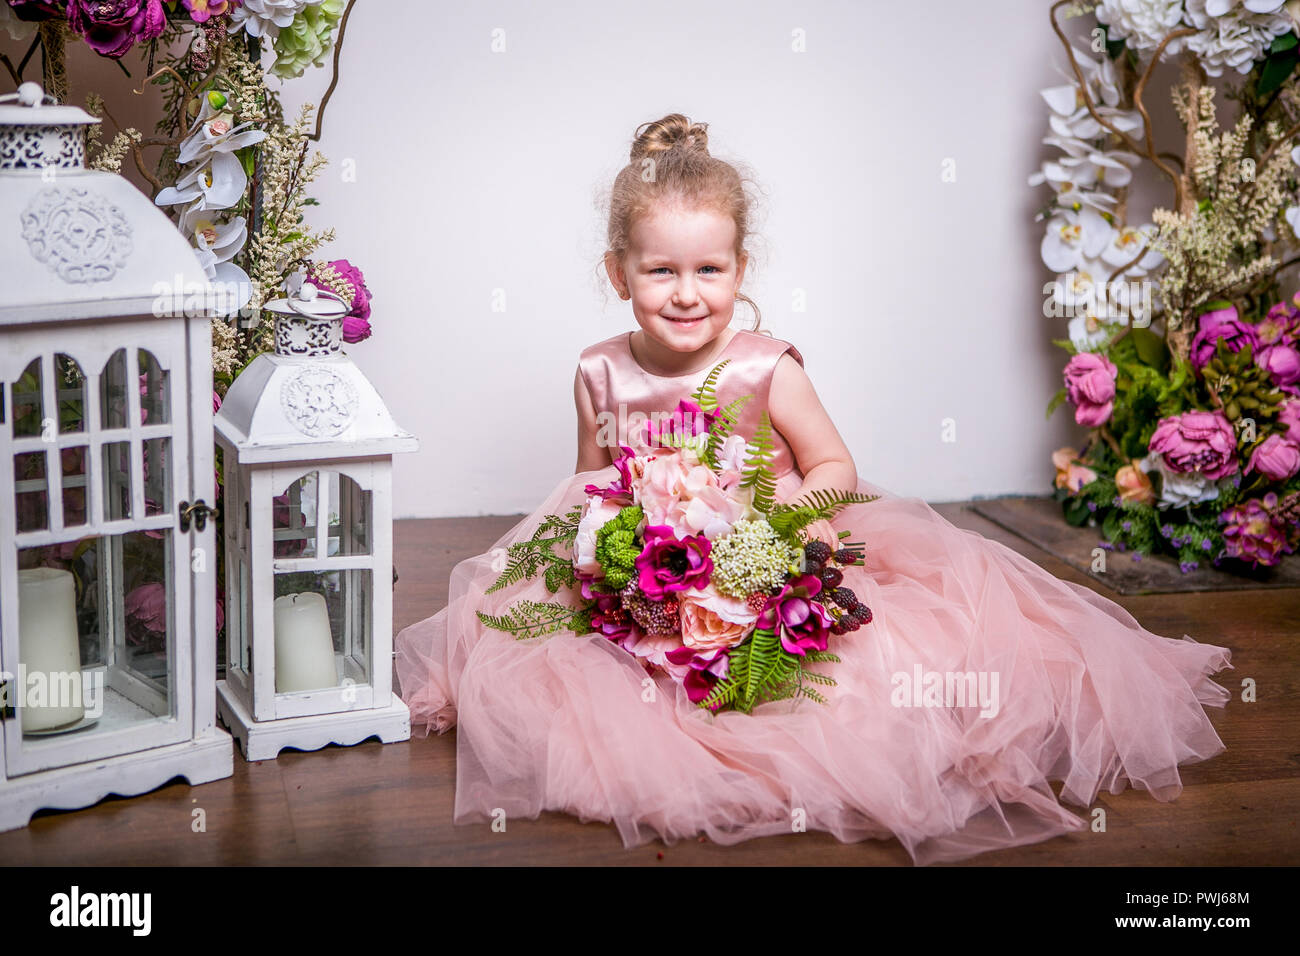 Eine kleine Prinzessin in einem schönen rosa Kleid sitzt auf dem Boden in  der Nähe von Blumen steht und Laternen, hält einen Strauß Pfingstrosen,  Magnolien, Beeren und Grün, und Lächeln Stockfotografie -